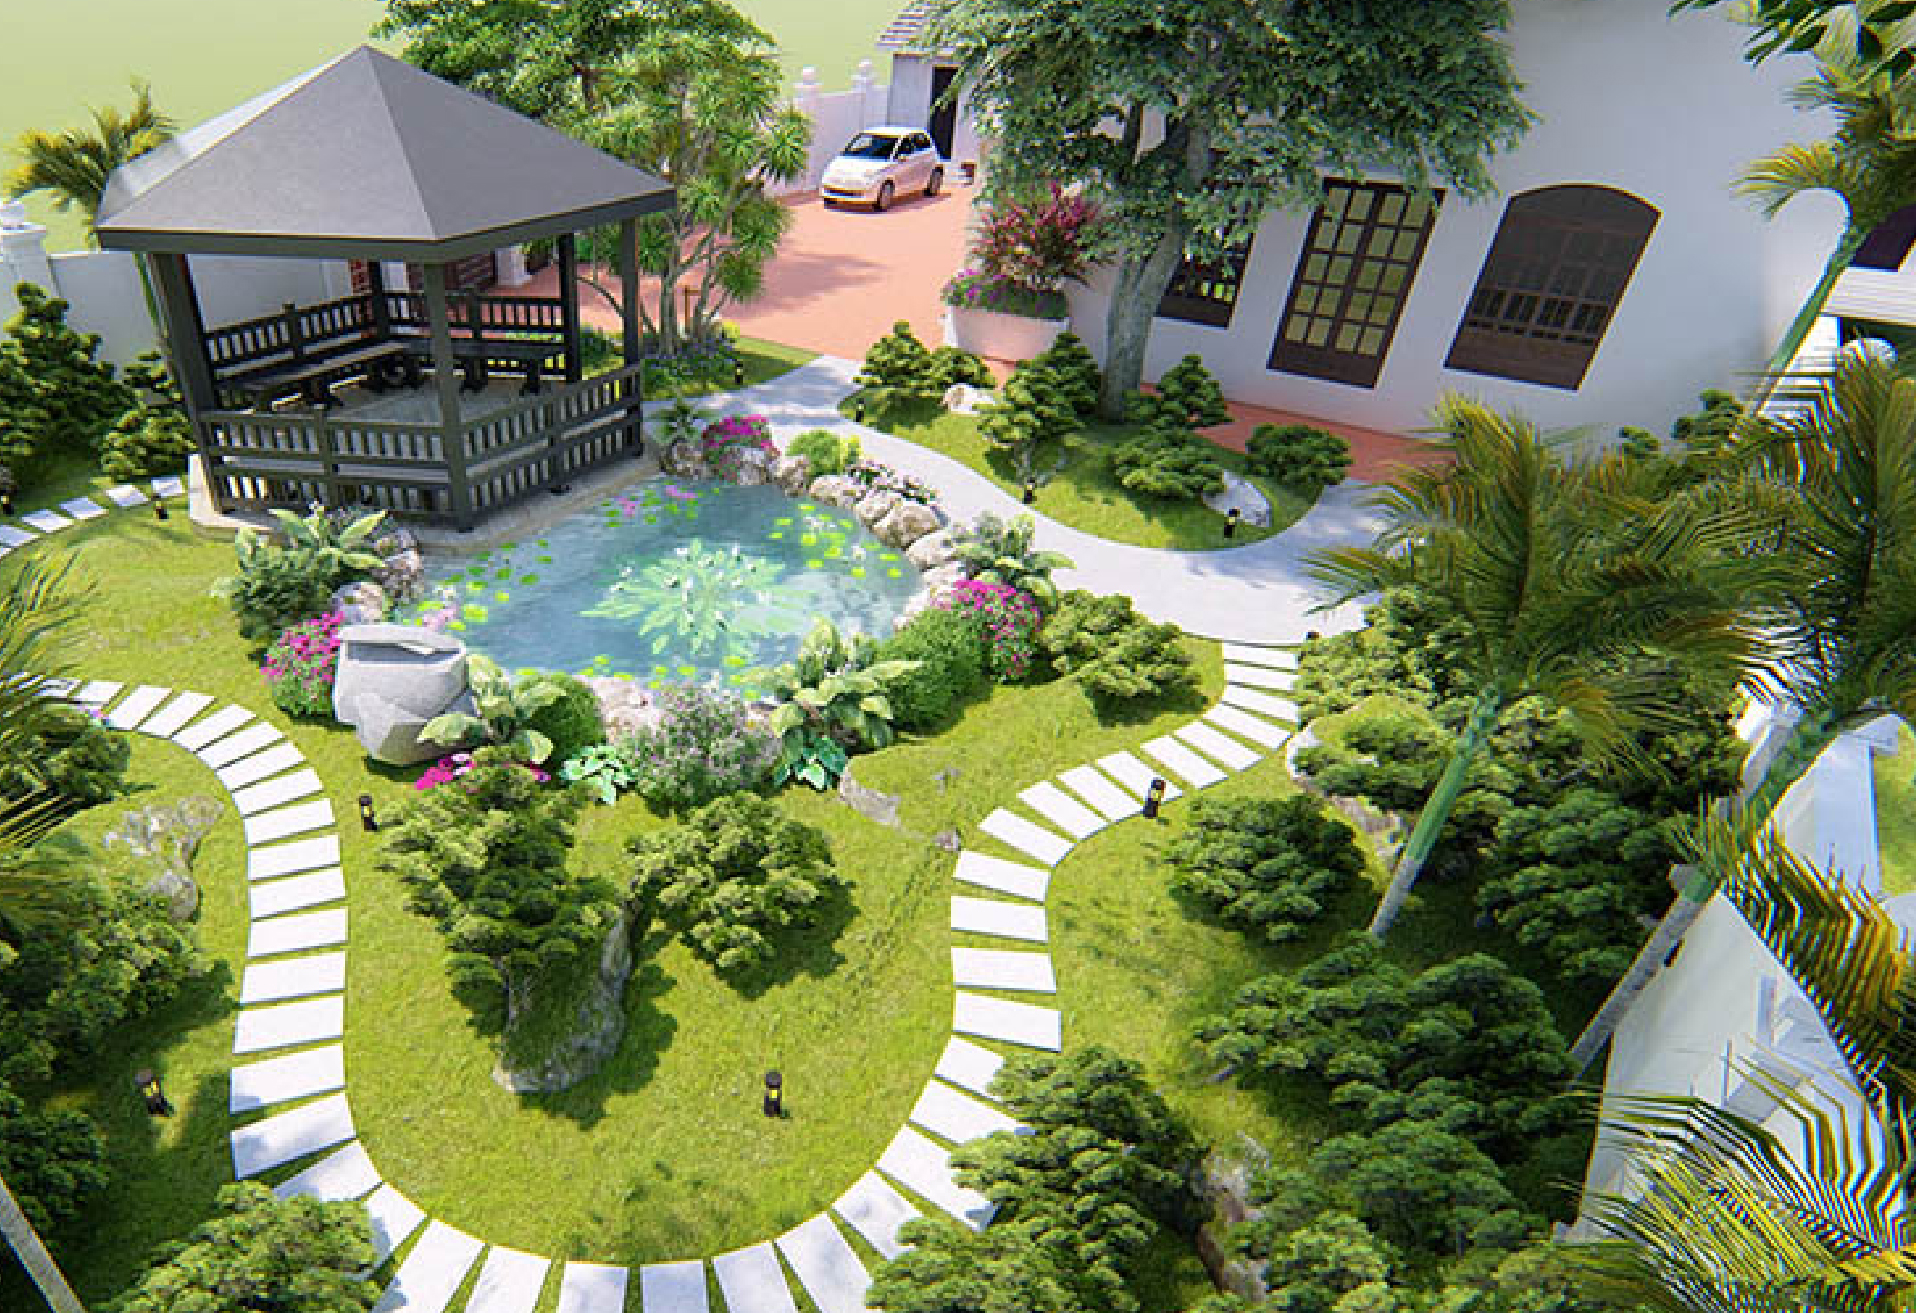 Tư vấn thiết kế sân vườn cho biệt thự 1 tầng phong cách châu âu  Kiến trúc  Angcovat